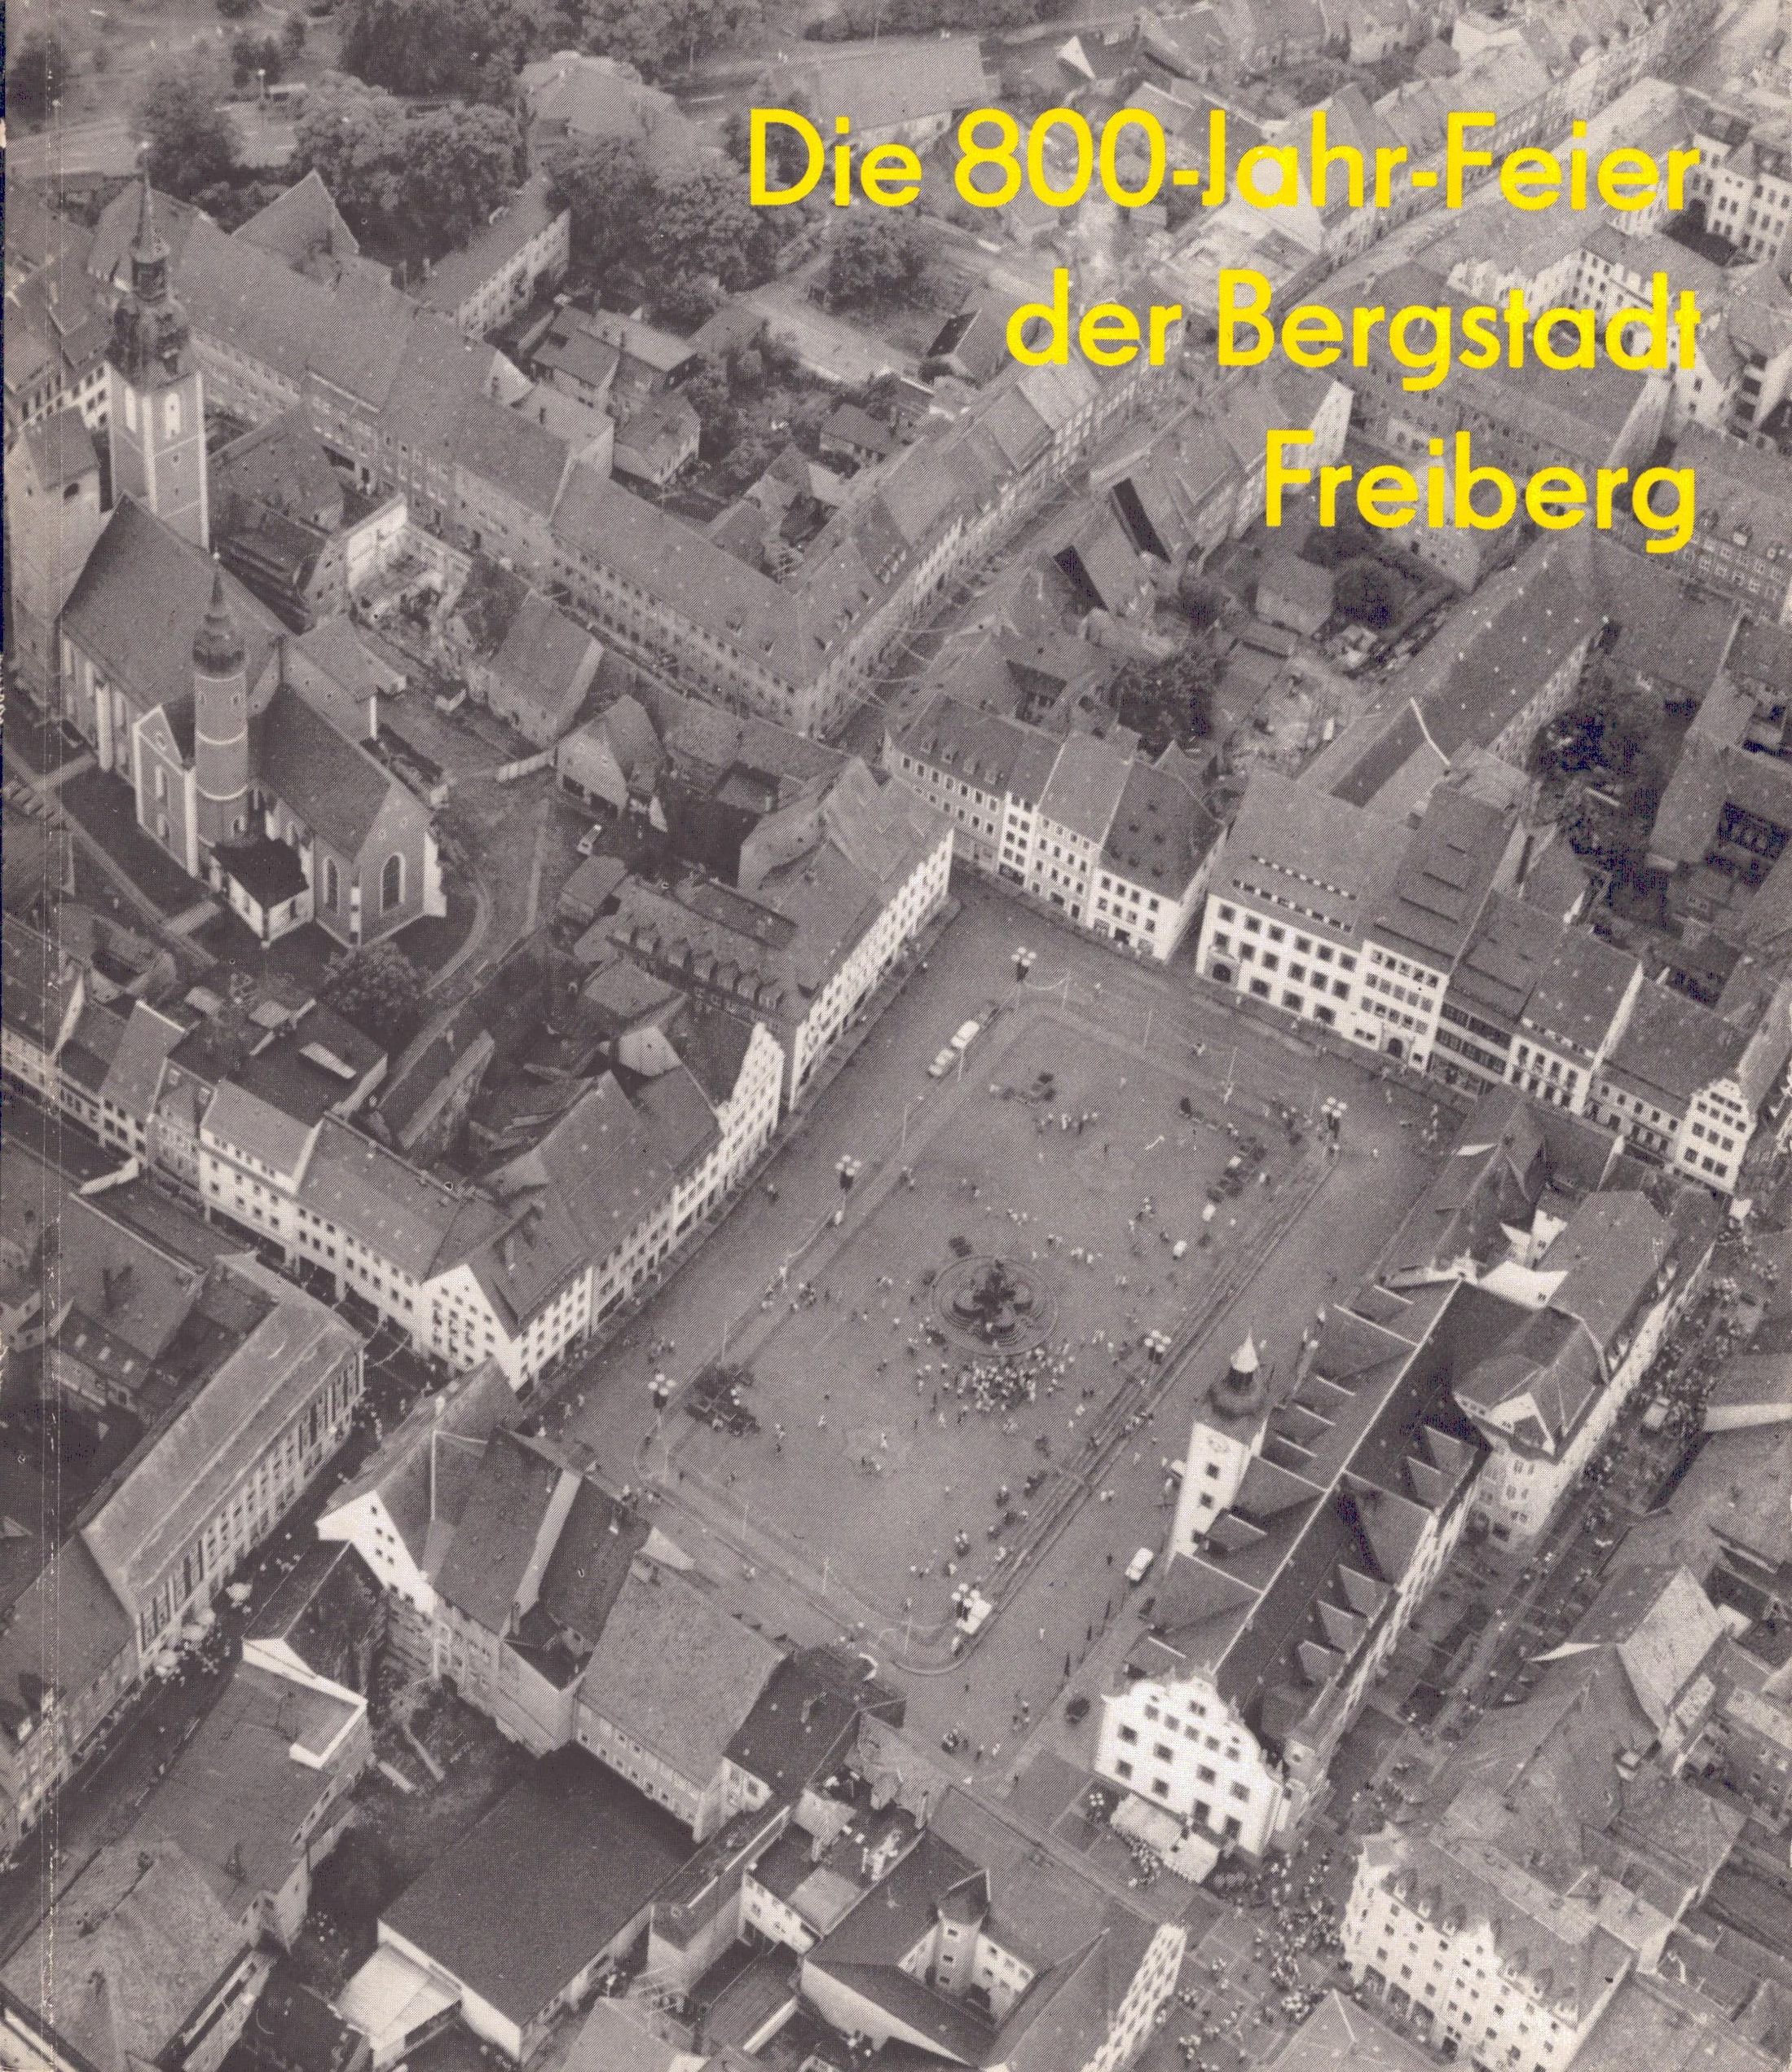 Die 800-Jahr-Feier der Bergstadt Freiberg (Archiv SAXONIA-FREIBERG-STIFTUNG CC BY-NC-SA)